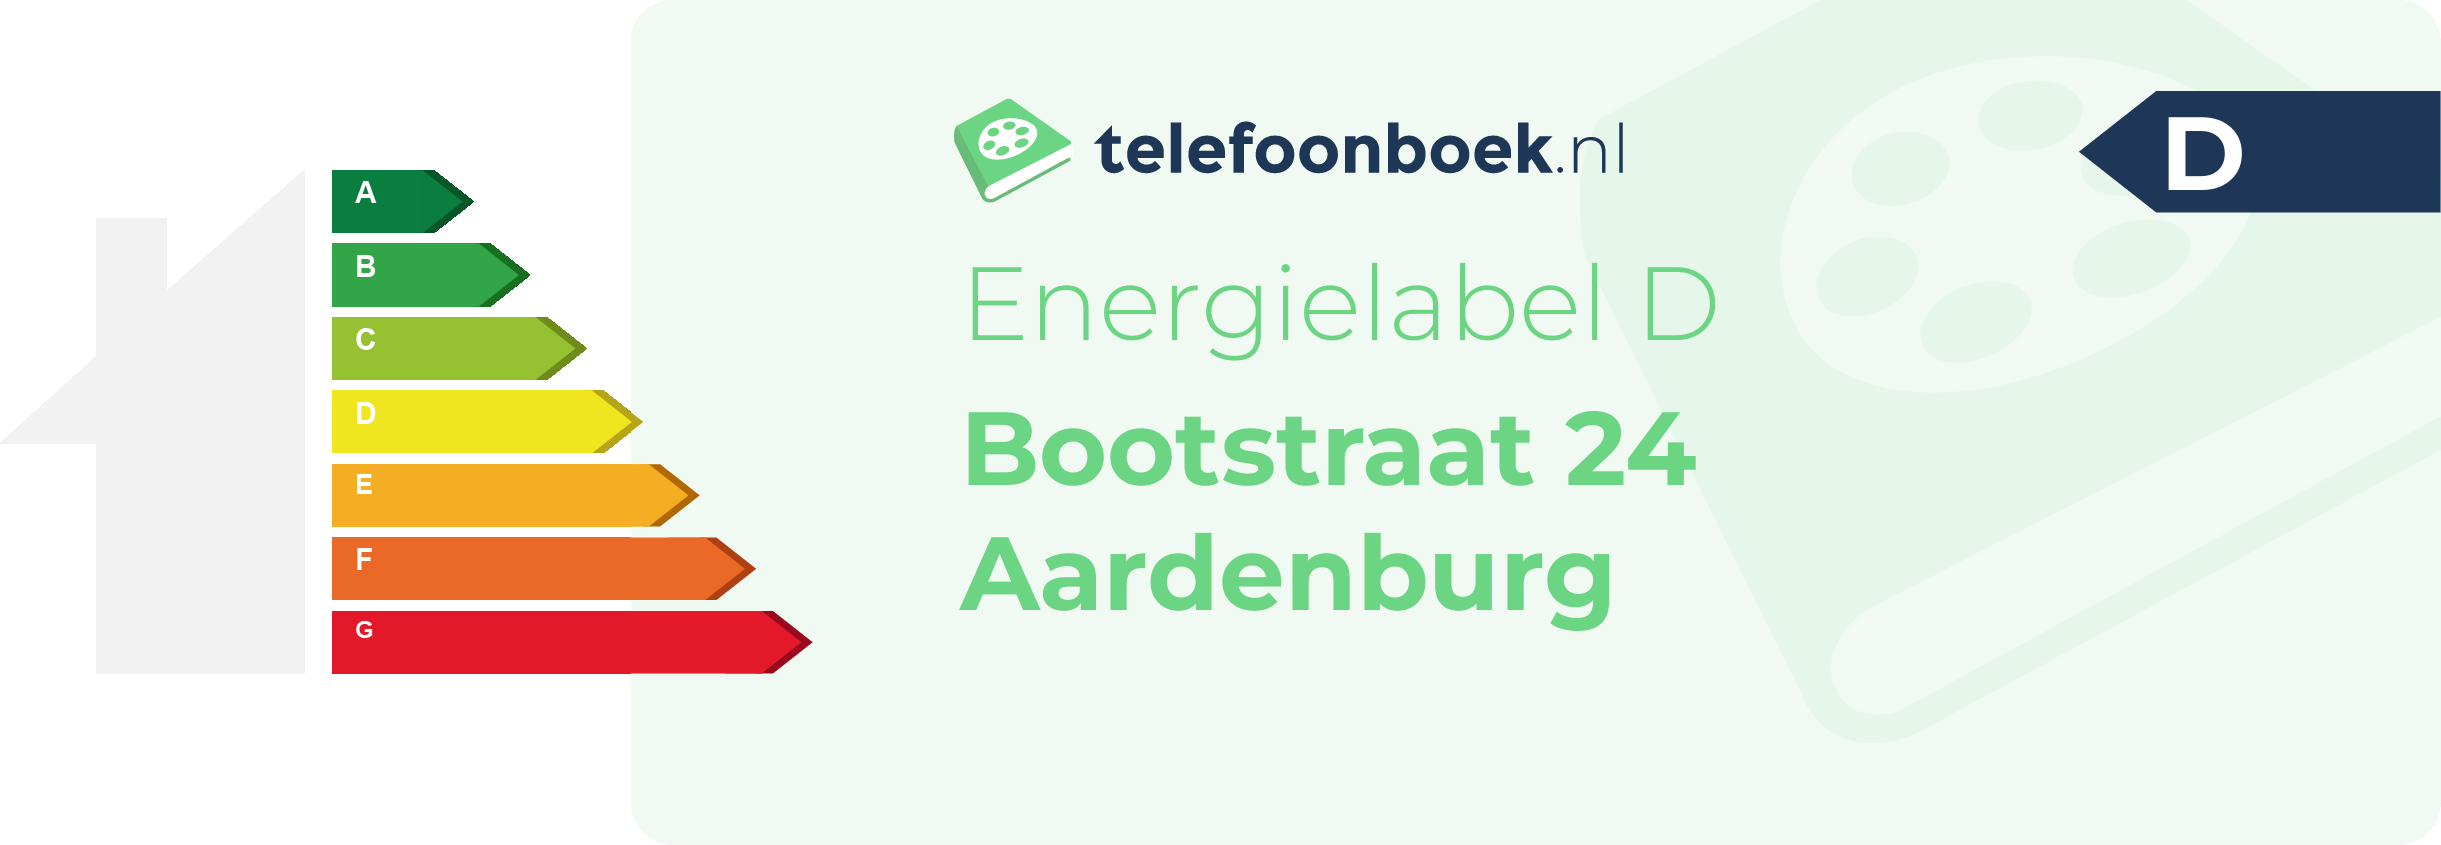 Energielabel Bootstraat 24 Aardenburg